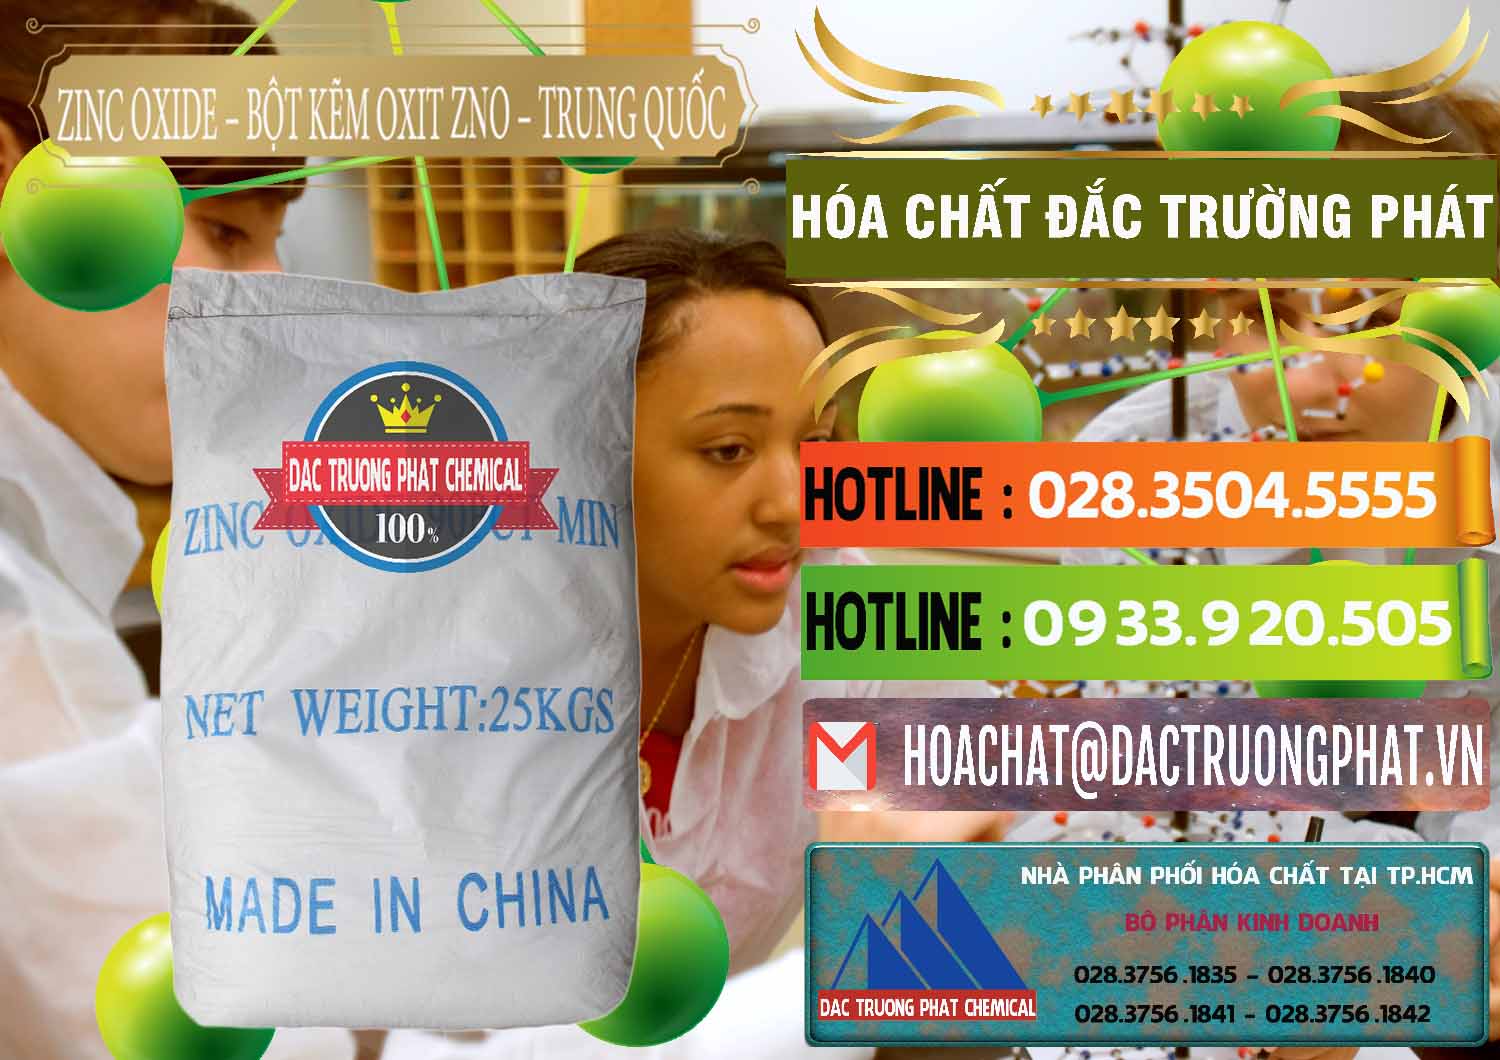 Nơi kinh doanh & bán Zinc Oxide - Bột Kẽm Oxit ZNO Trung Quốc China - 0182 - Đơn vị chuyên phân phối - bán hóa chất tại TP.HCM - cungcaphoachat.com.vn